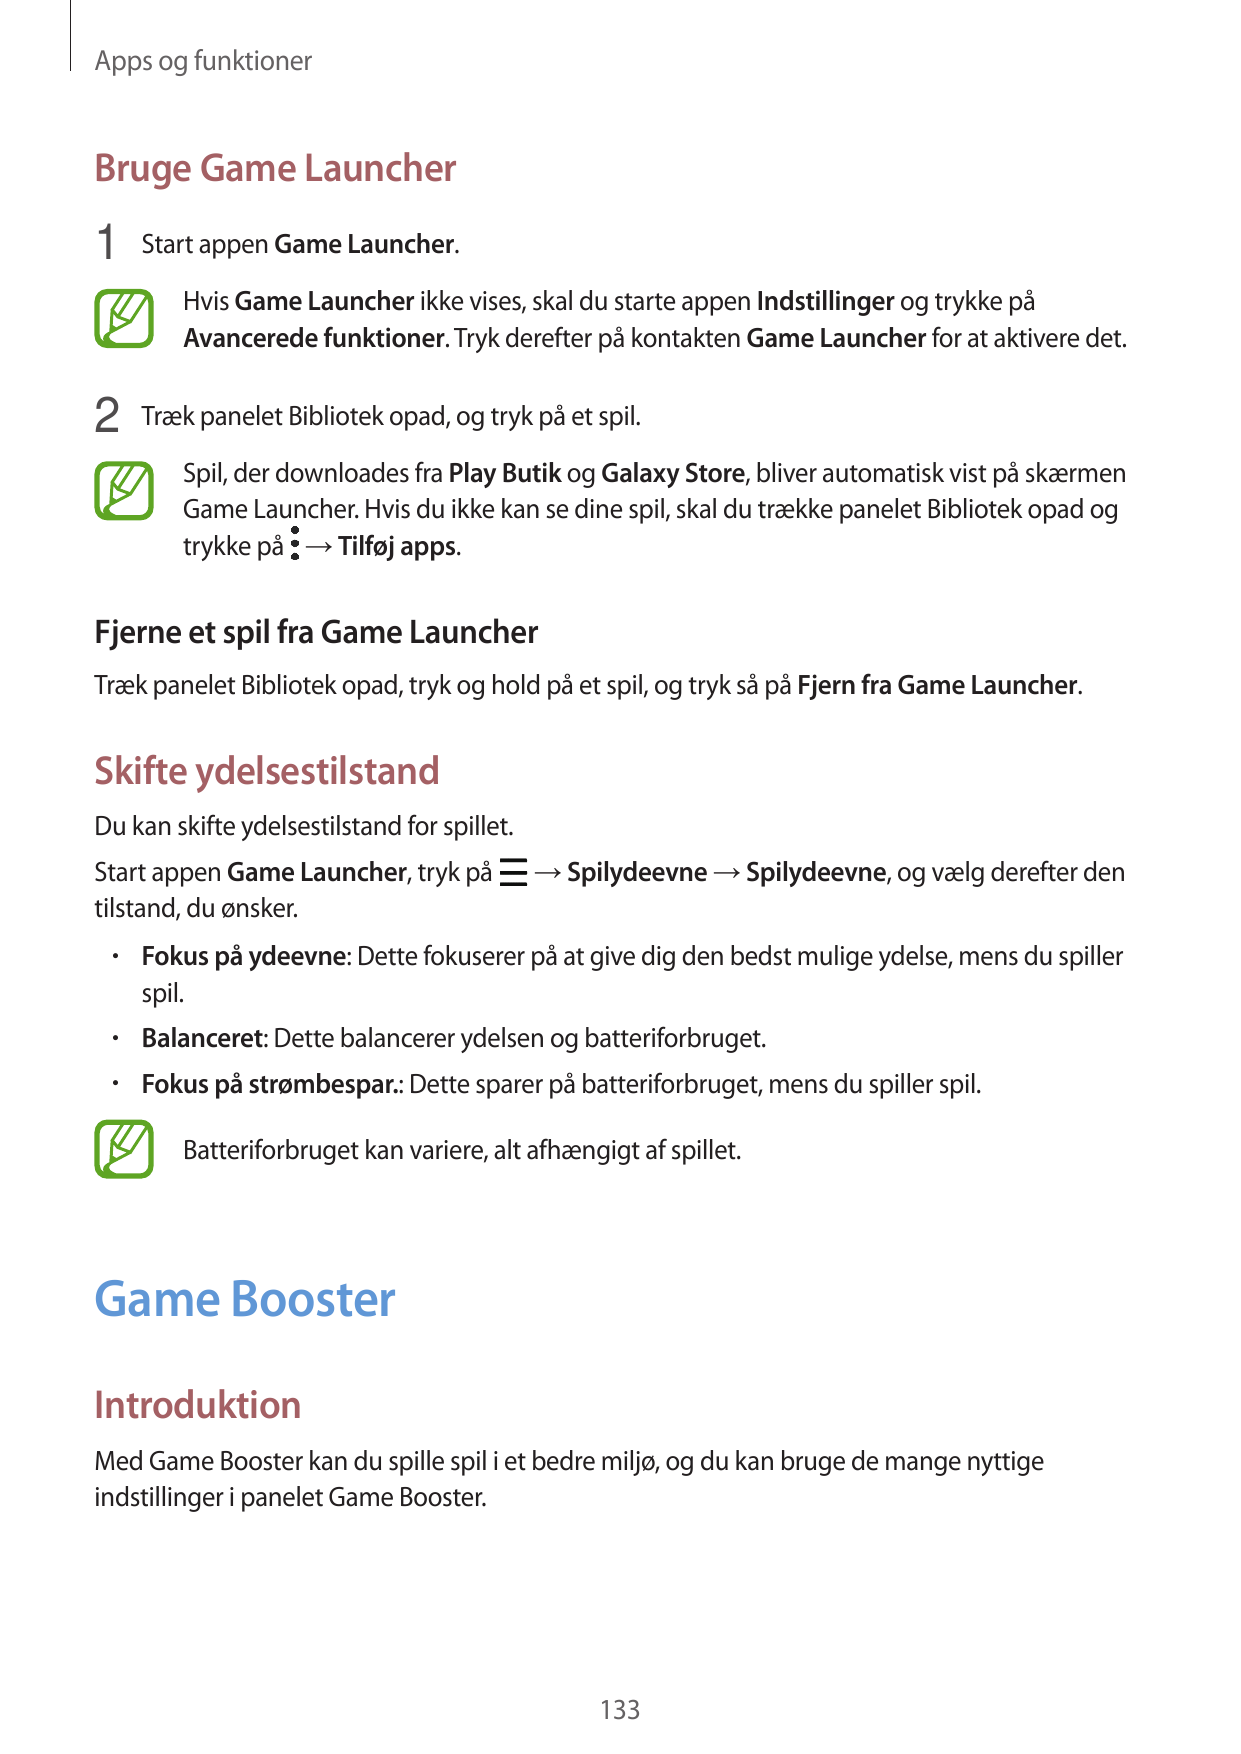 Apps og funktionerBruge Game Launcher1 Start appen Game Launcher.Hvis Game Launcher ikke vises, skal du starte appen Indstilling